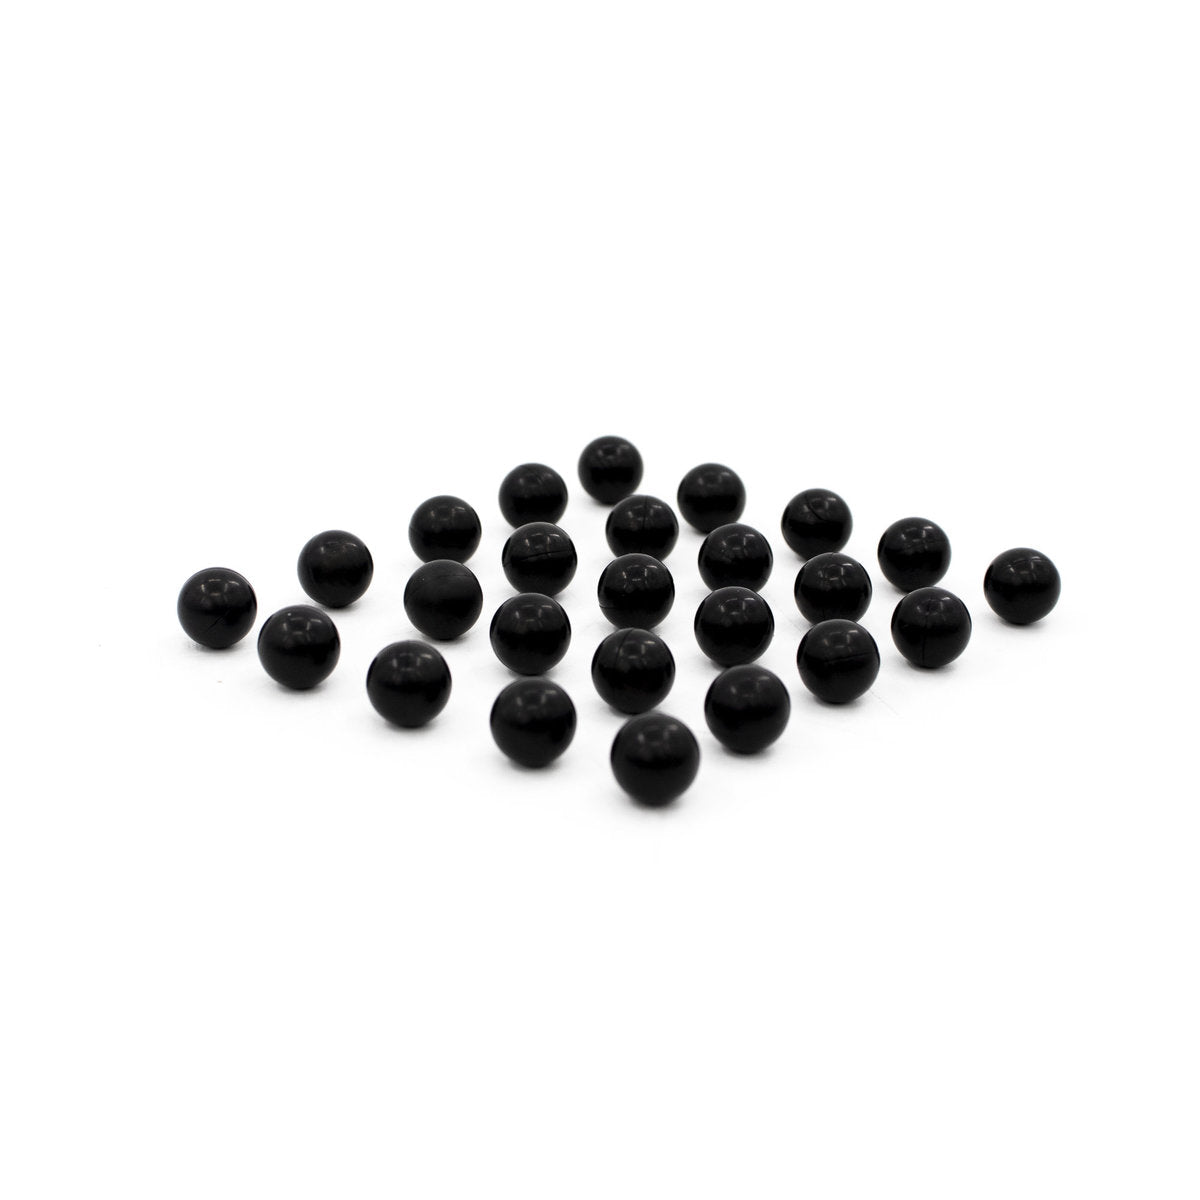 Bolas de Goma de Alta Densidad - Hard Rubber Balls Cal. 0.50 (1.320 gr)